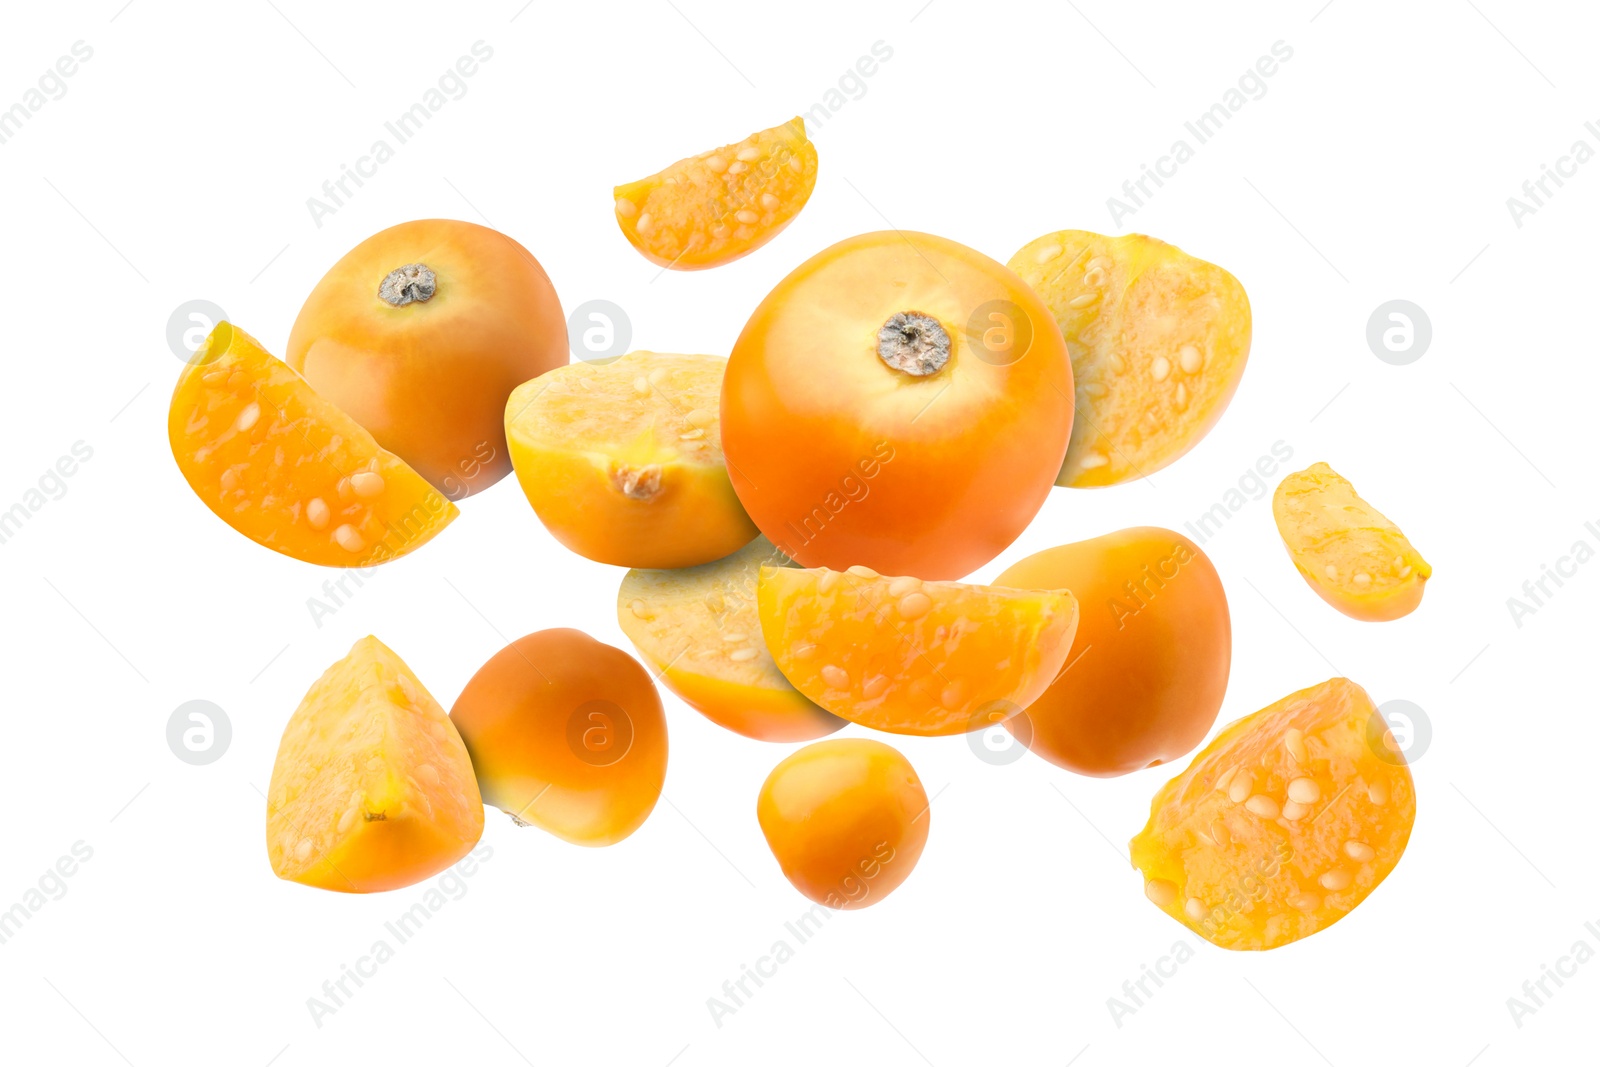 Image of Ripe orange physalis fruits falling on white background